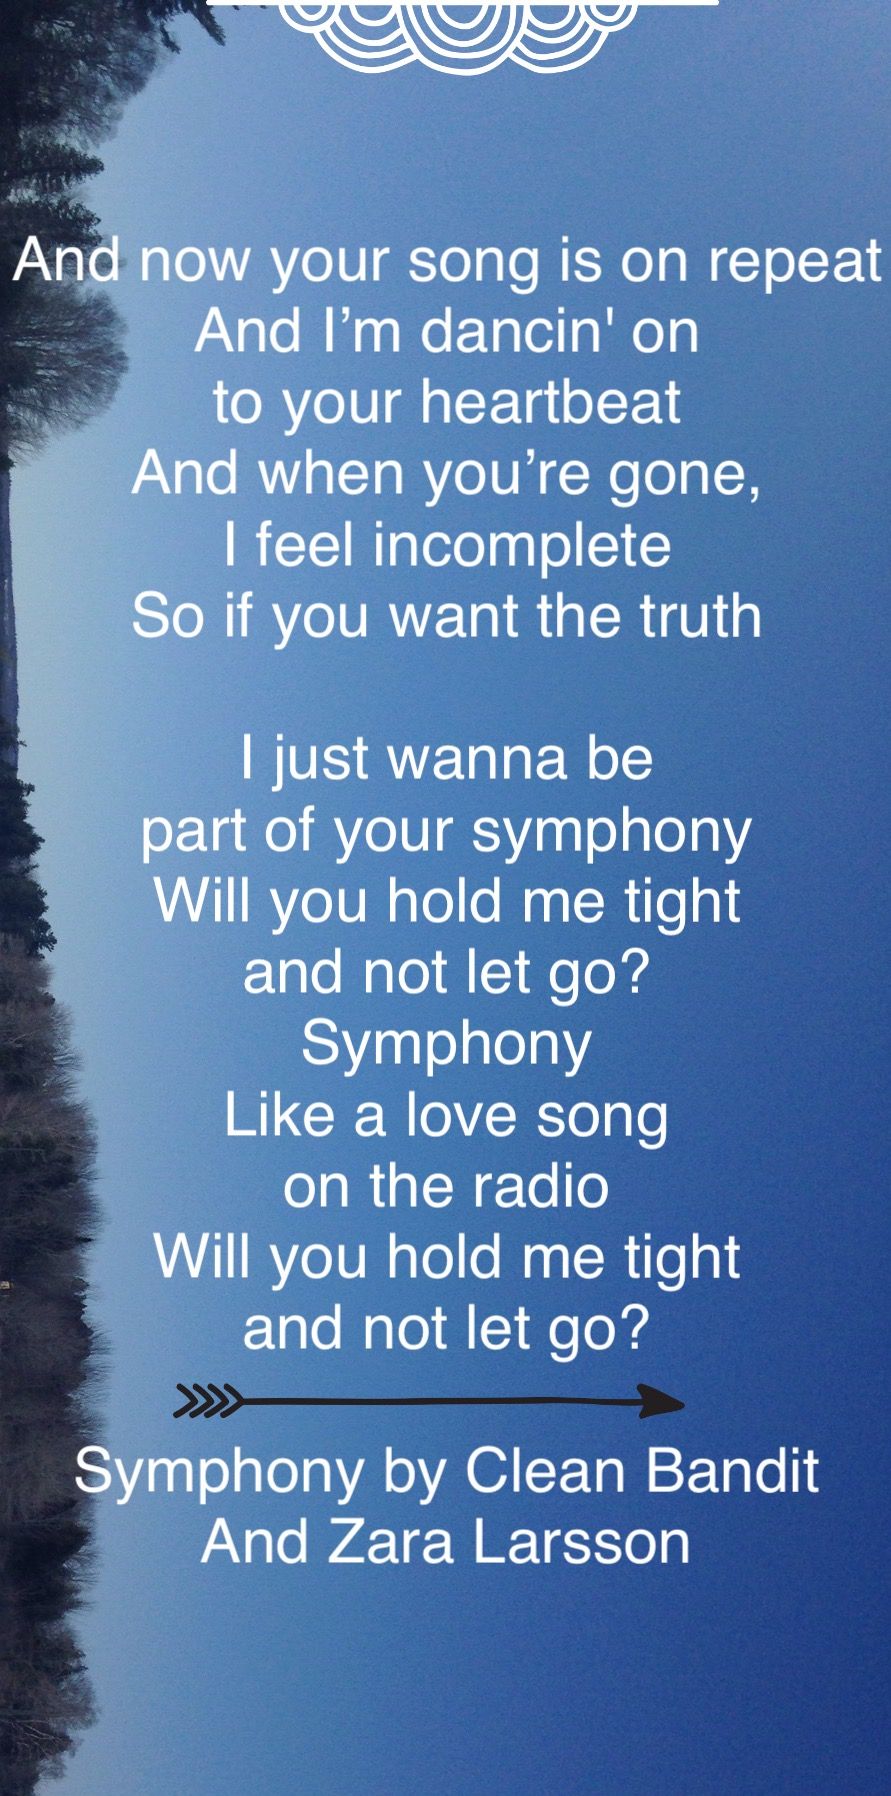 symphony lyrics